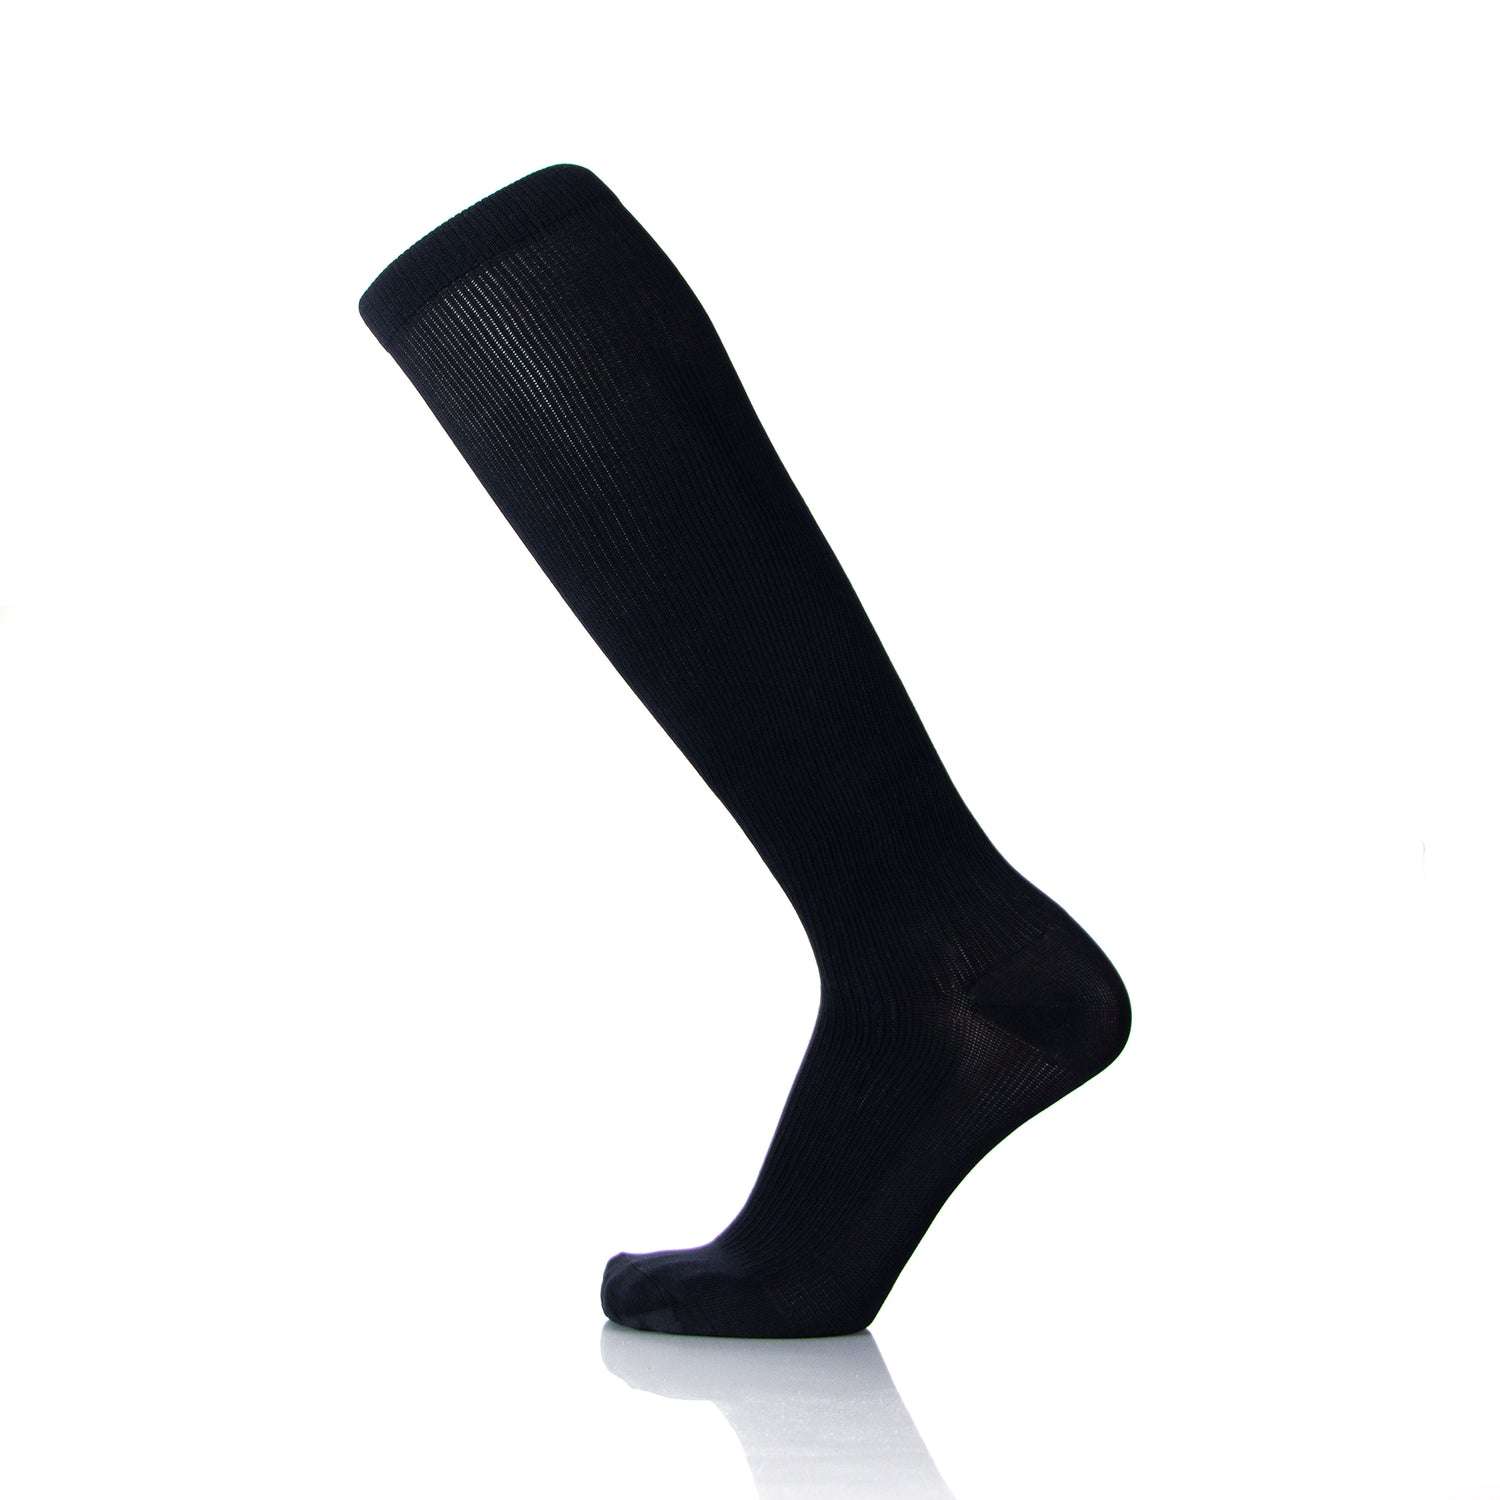 Doctor Brace Actiman 30-40 mmHg Compression Socks For Men